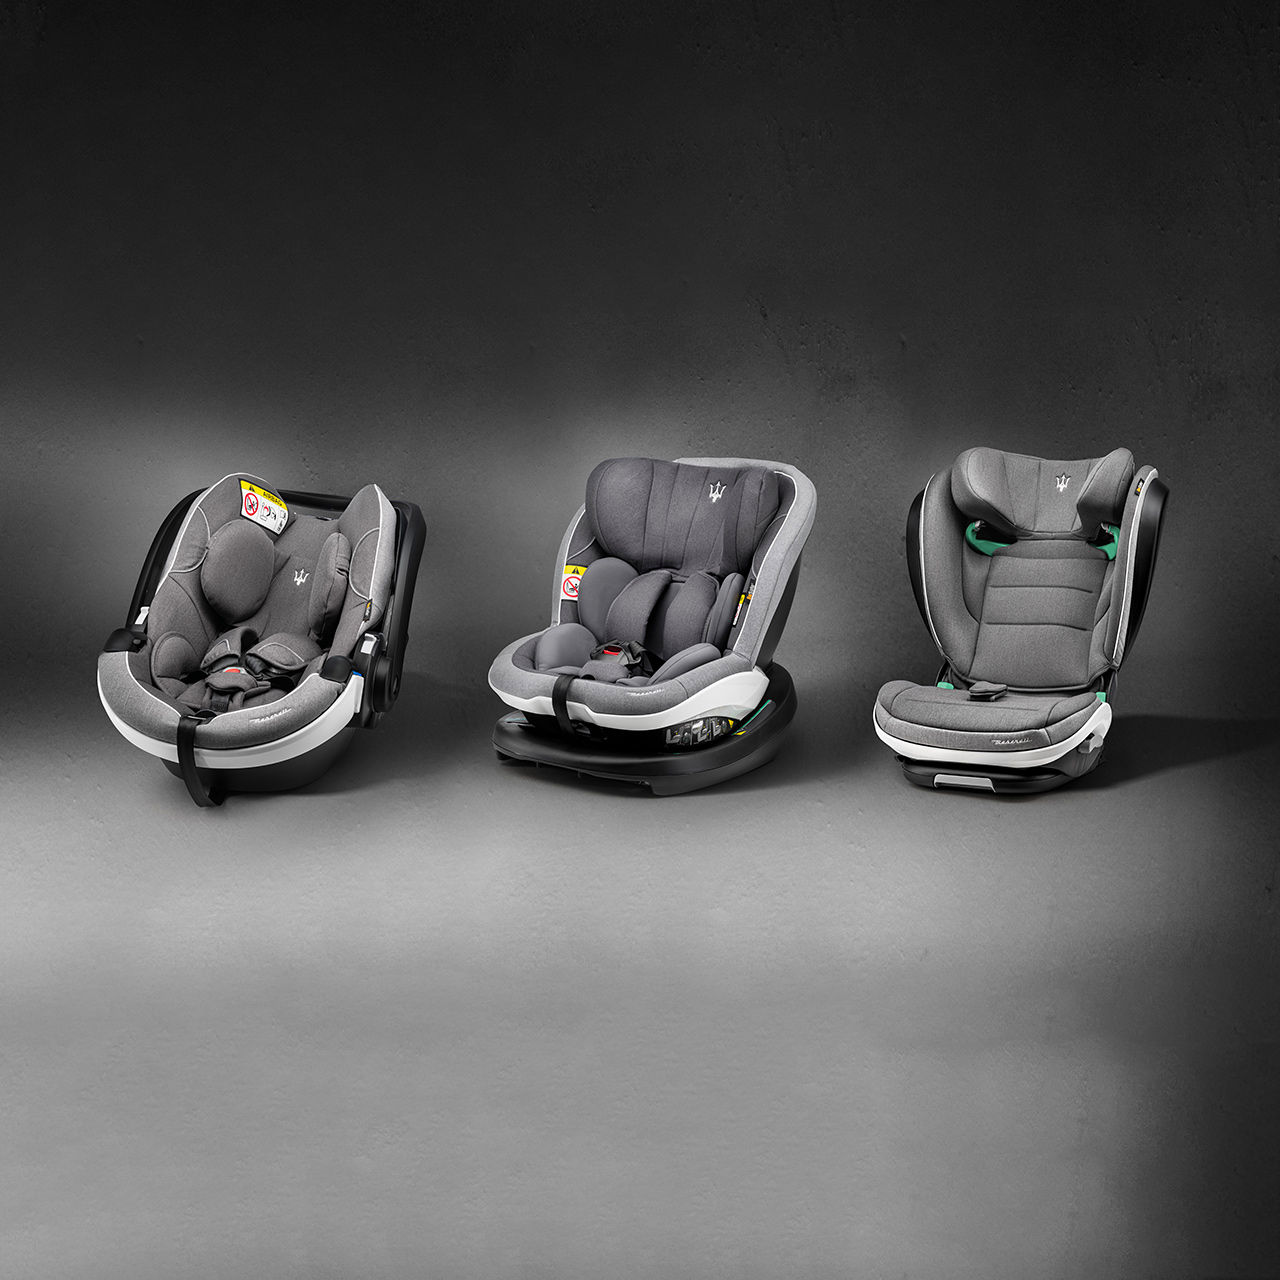 3 child seats for Maserati Levante